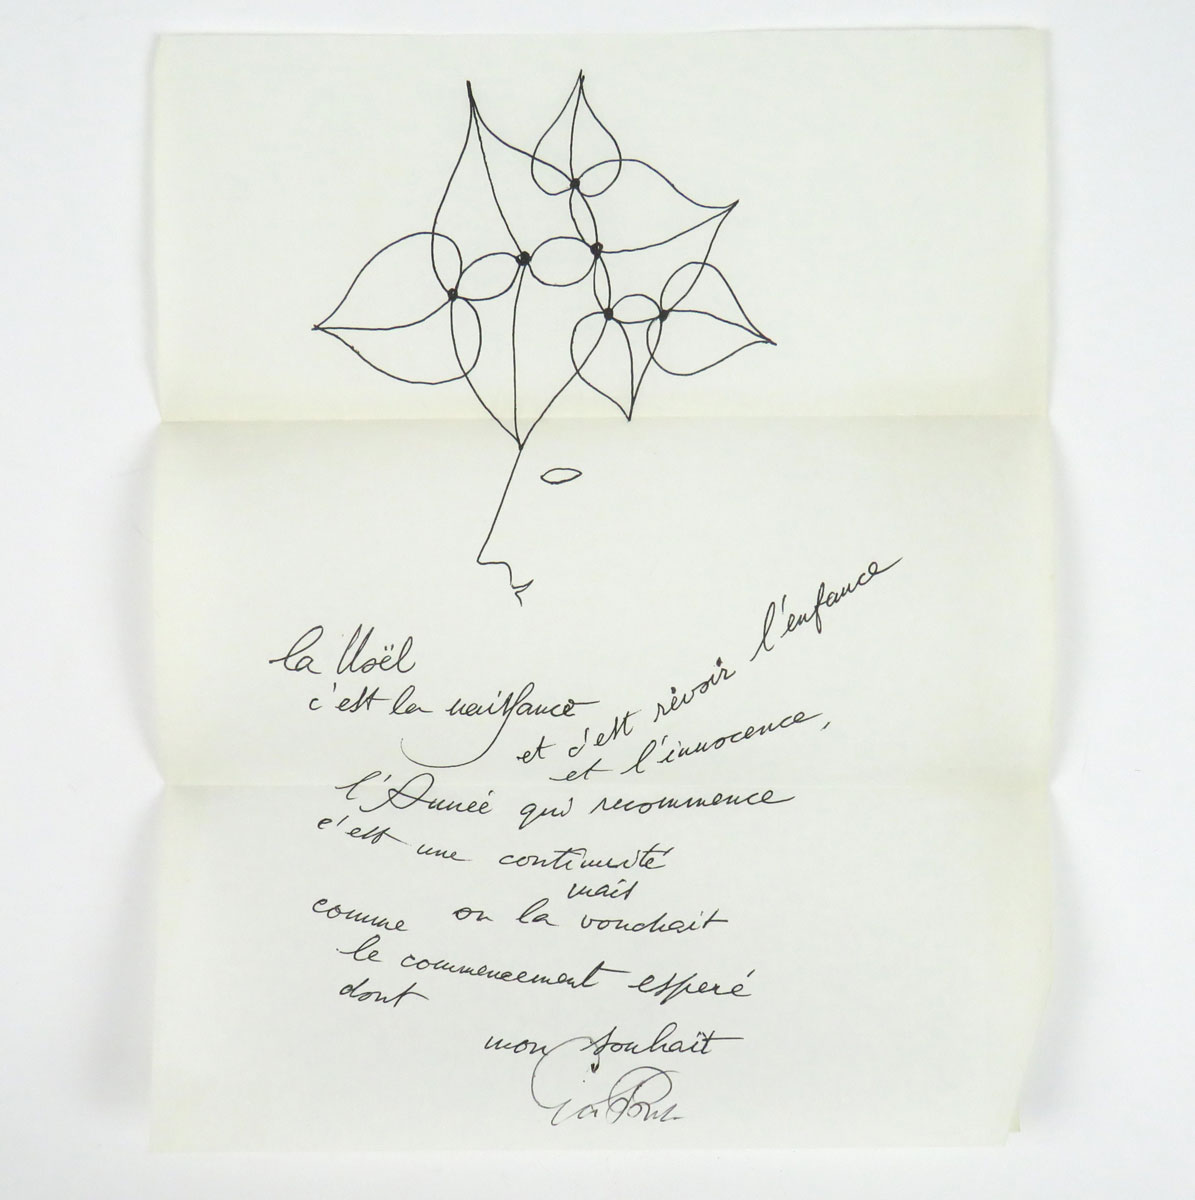 biglietto di auguri di natale con disegno e poesia in facsimile di manoscritto, su raffinata carta di riso, con firma autografa «gio ponti»